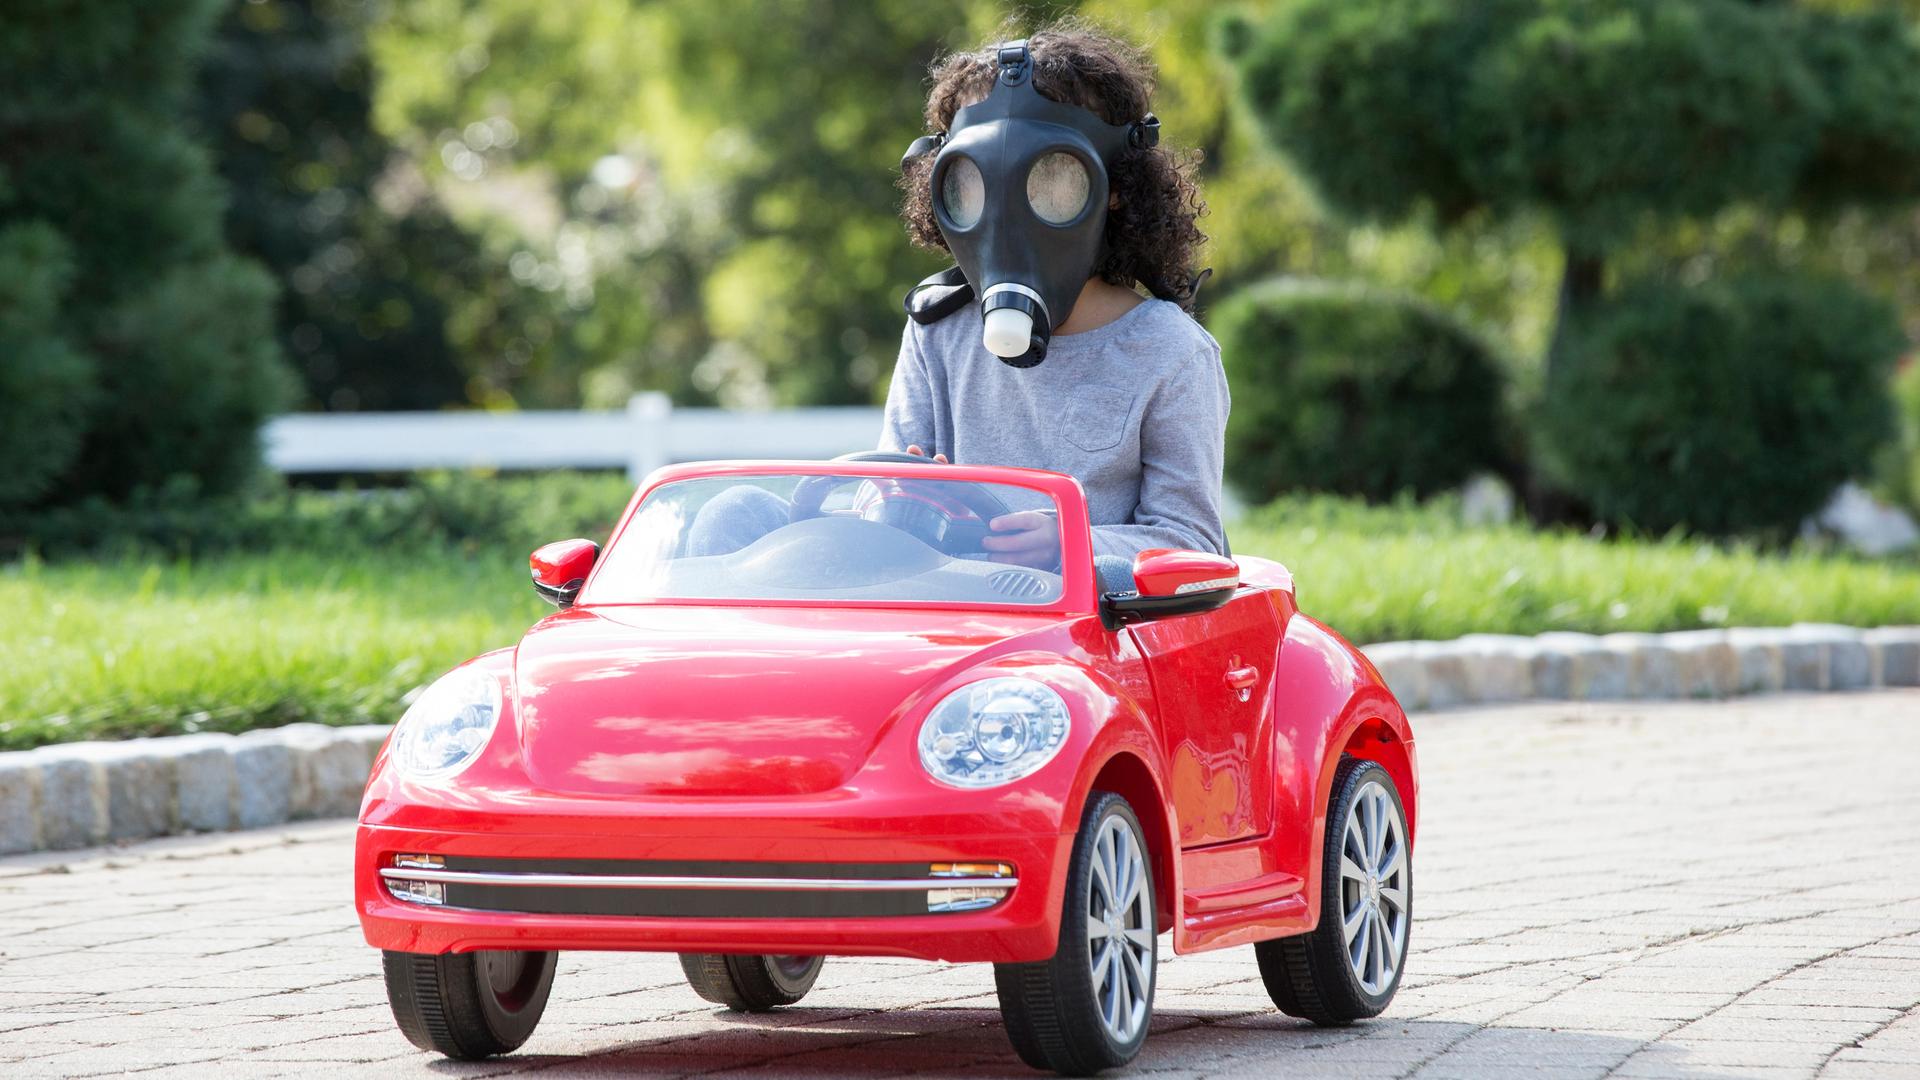 Ein Kind mit einer Gasmaske führt mit einem roten Spielzeugauto.